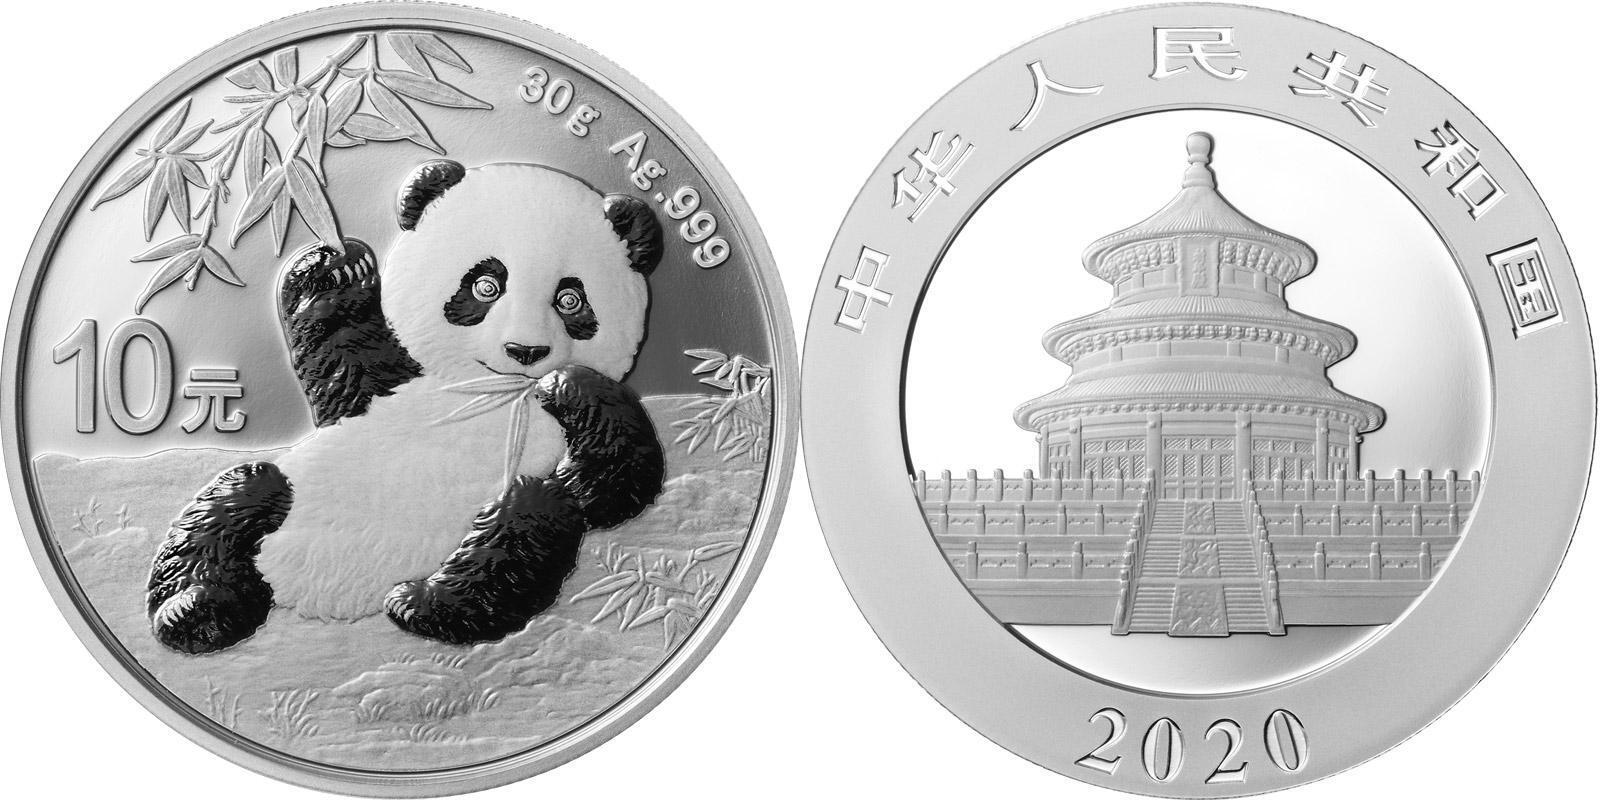 CHINA PANDA SILVER 30 GRAM COIN 2019 UNC 